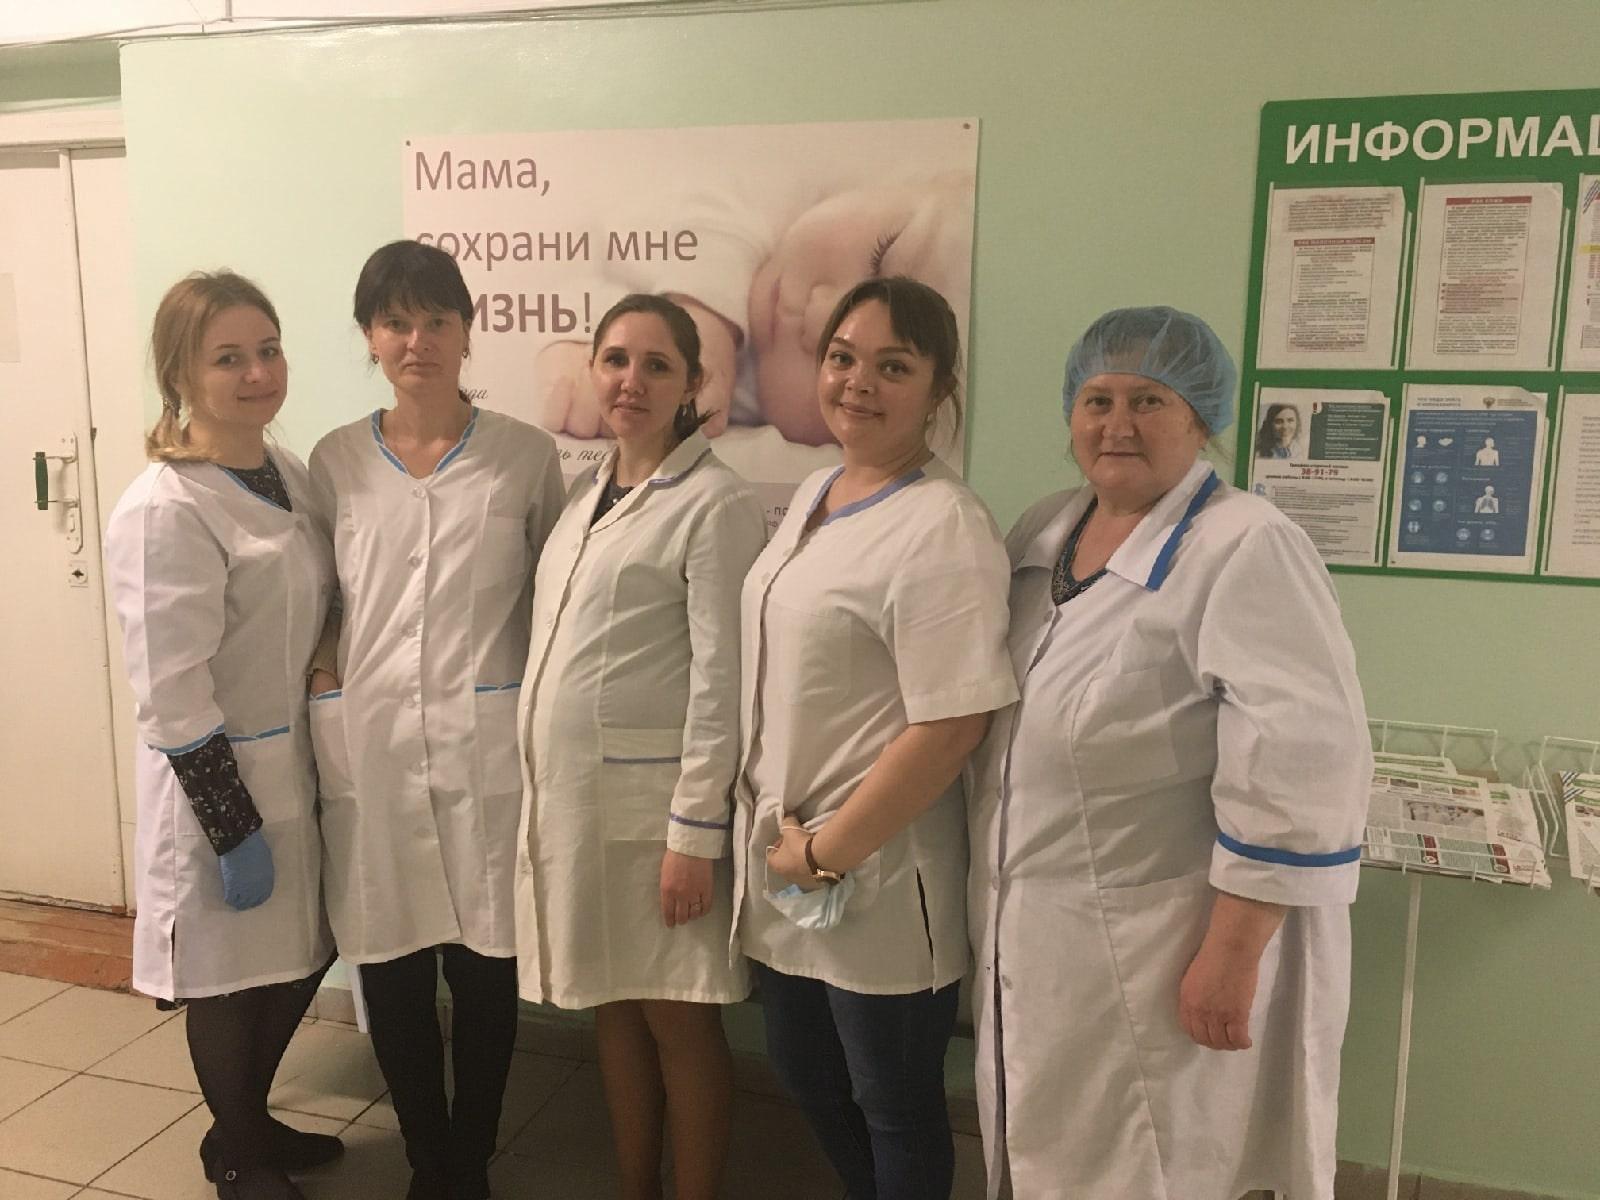 Центр «Моя семья» разместил в женской консультации КОГБУЗ «Афанасьевская центральная районная больница» 5 стендов в защиту жизни до рождения!